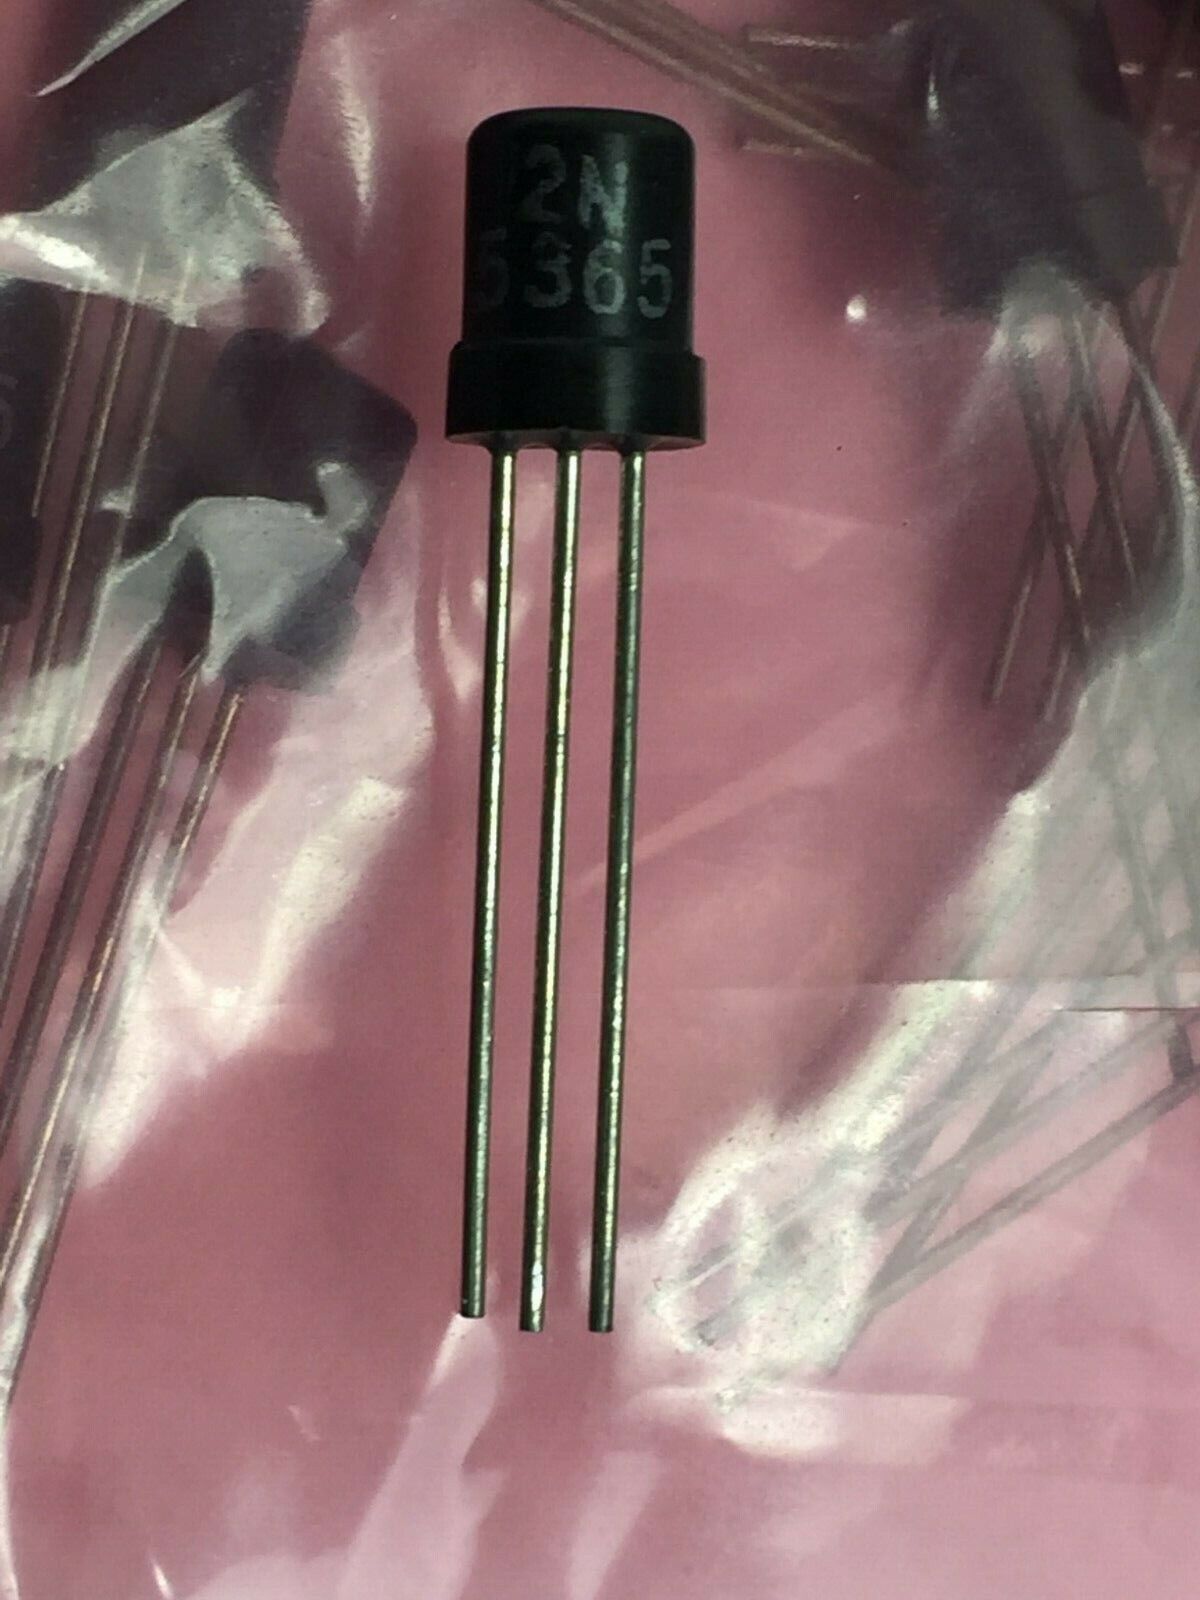 2N5365 PNP Transistor T0-92  Lot of 25